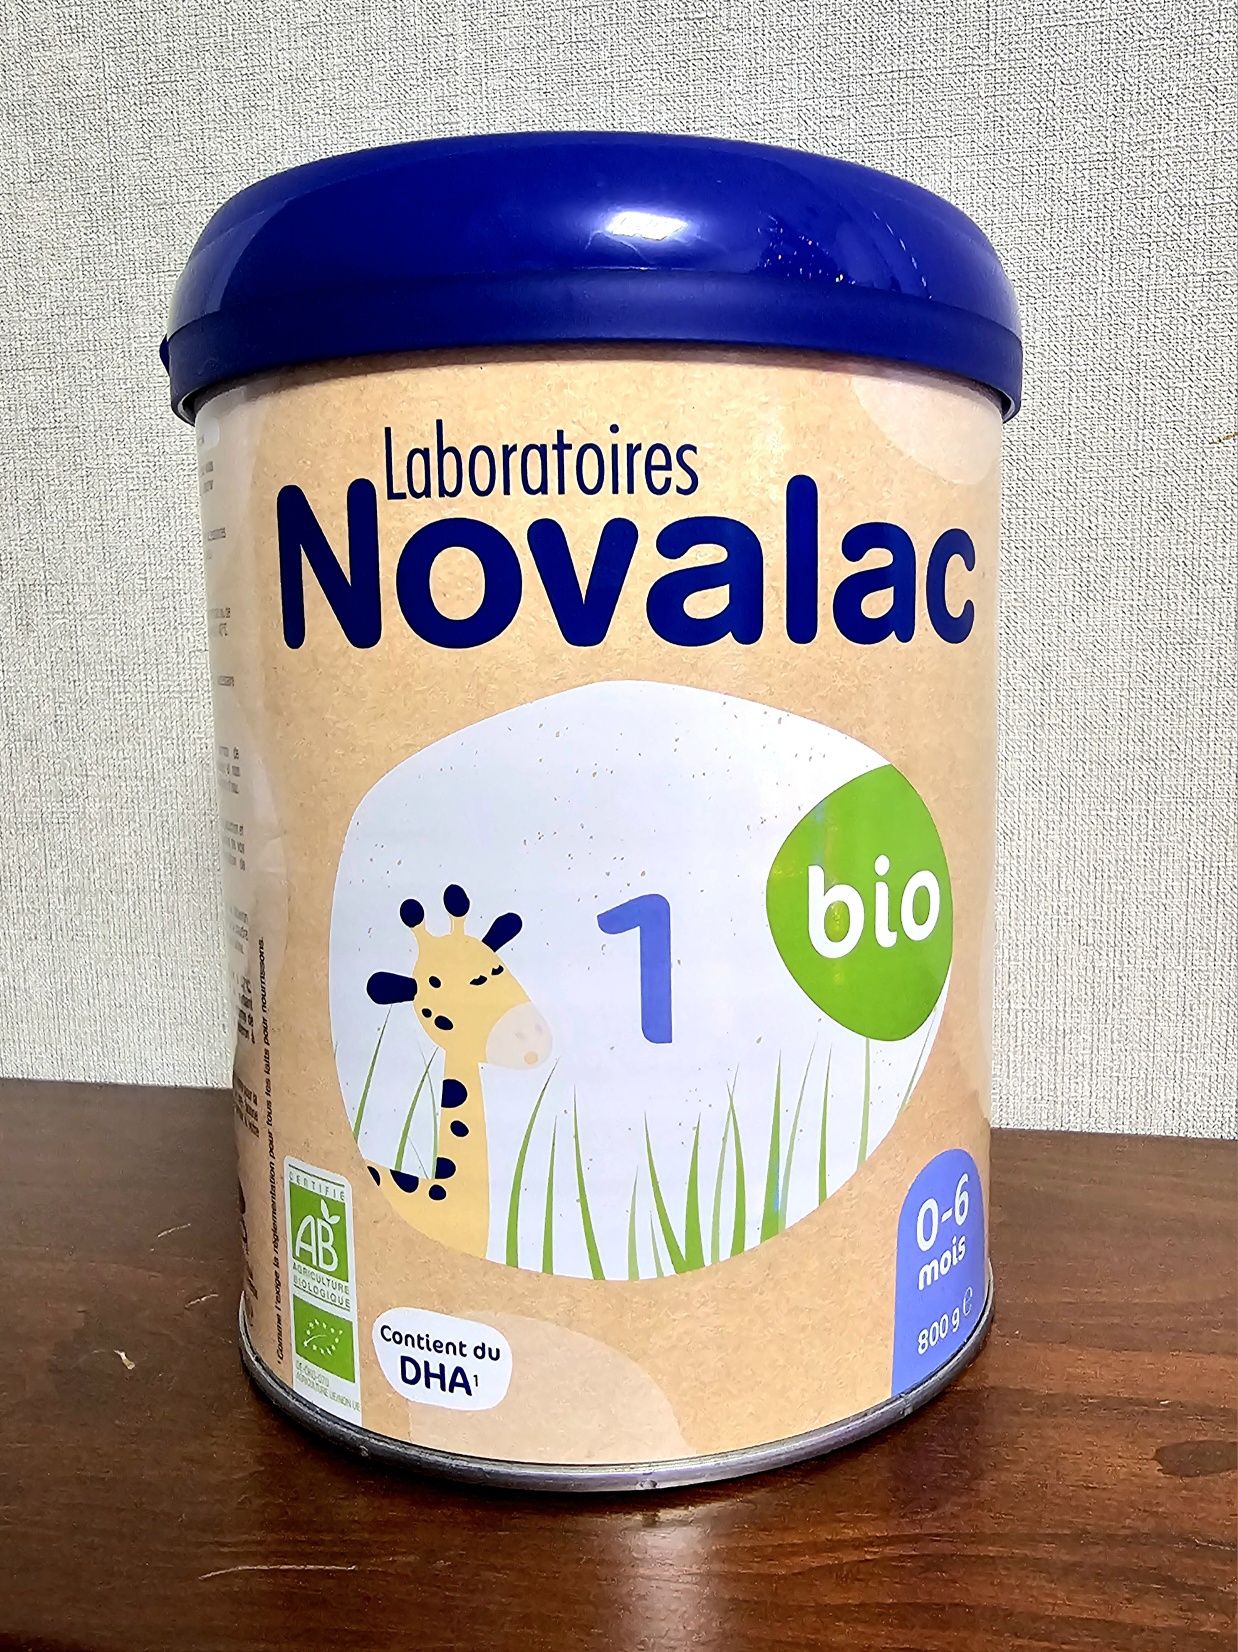 Дитяче харчування - Laboratoires
Novalac
bio